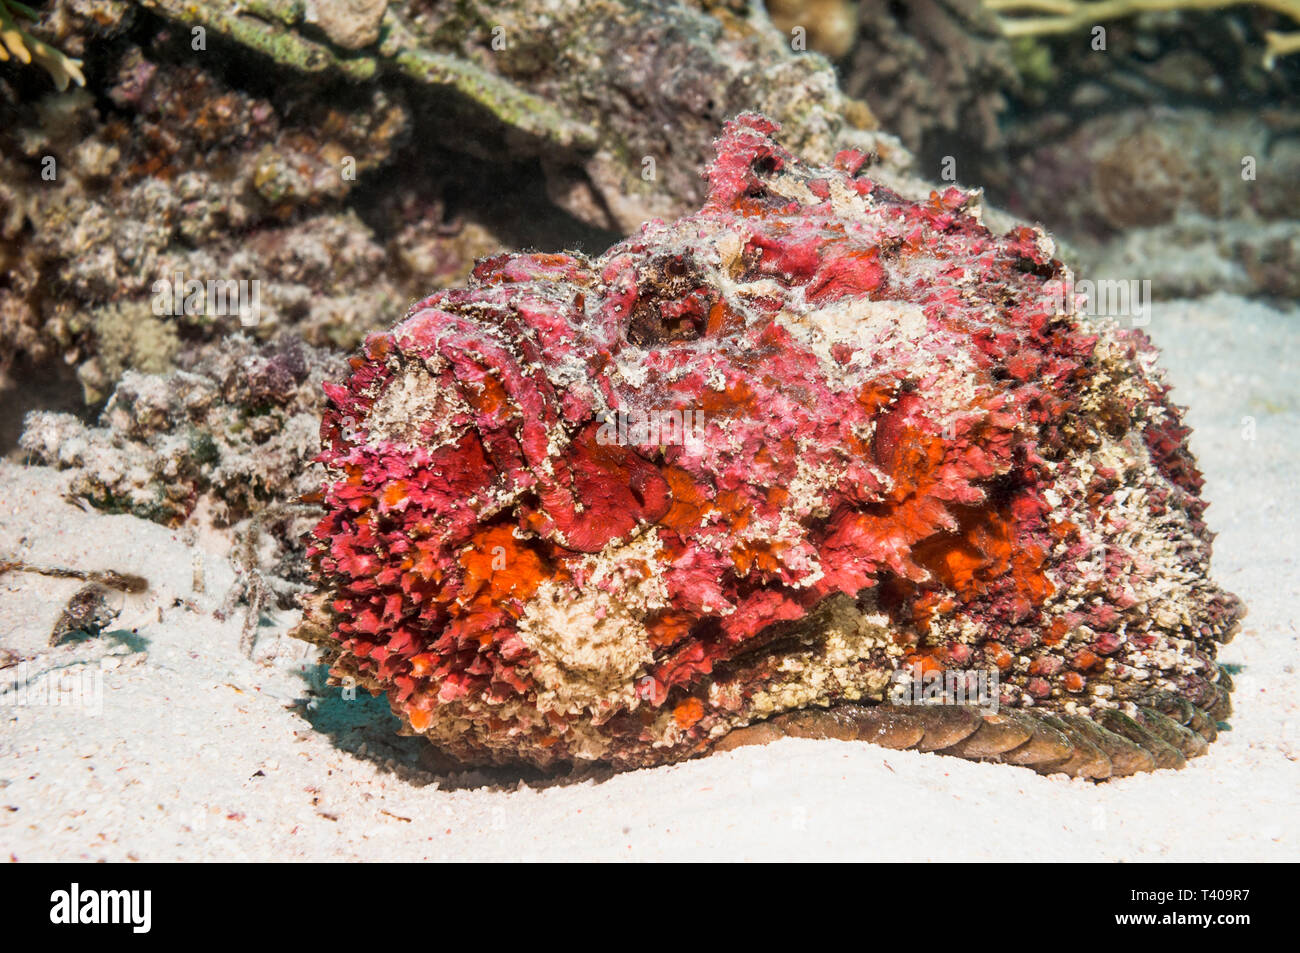 Reef poisson-pierre Synanceia verrucosa []. Il a jeté sa peau, montrant l'accouplement rouge couleur. Le poisson le plus venimeux. L'Egypte, Mer Rouge. Pacifi que Ouest Indo Banque D'Images